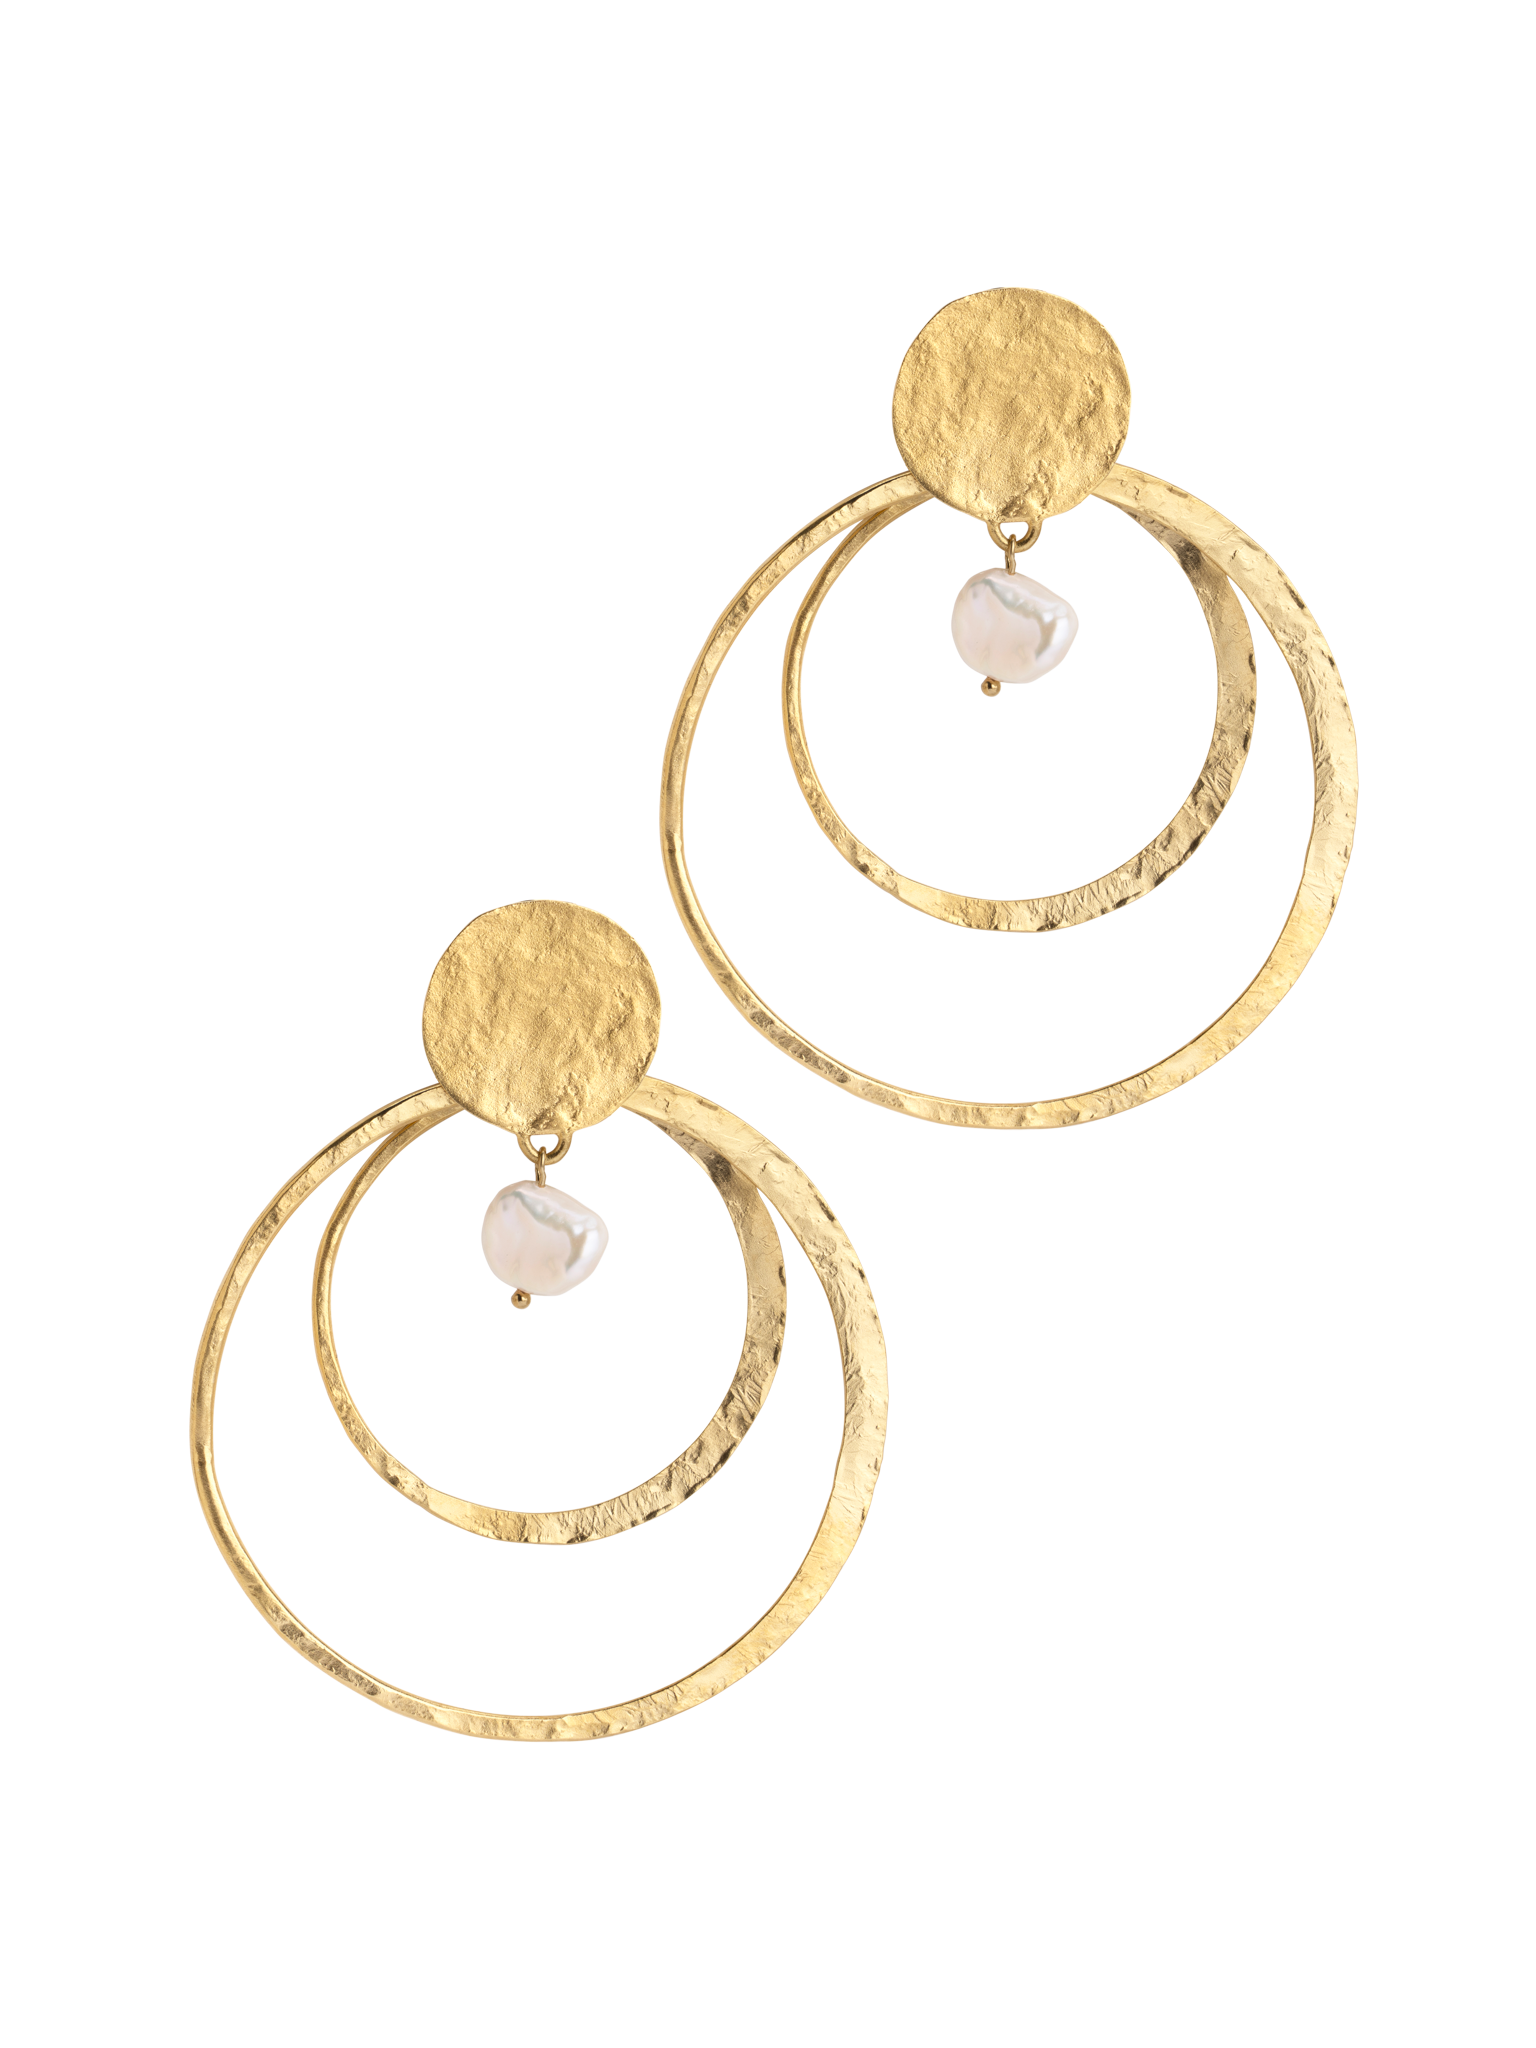 Circle of love earrings